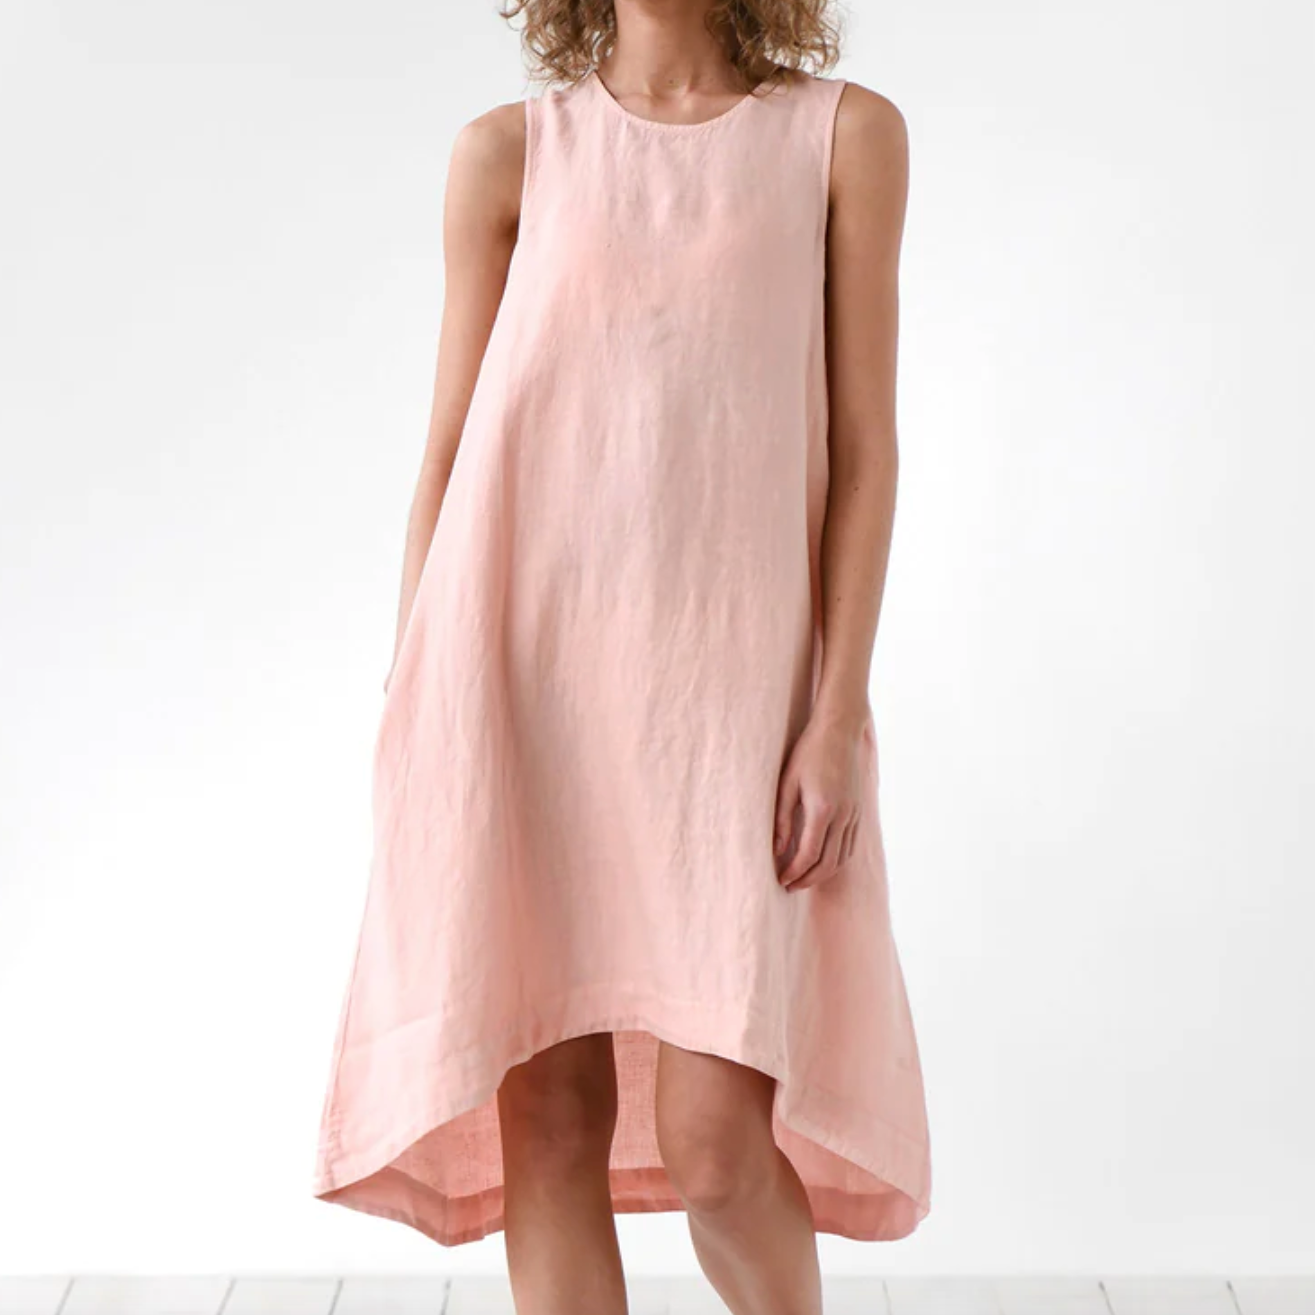 MagicLinen Royal Toscana Linen Dress in Light Pink